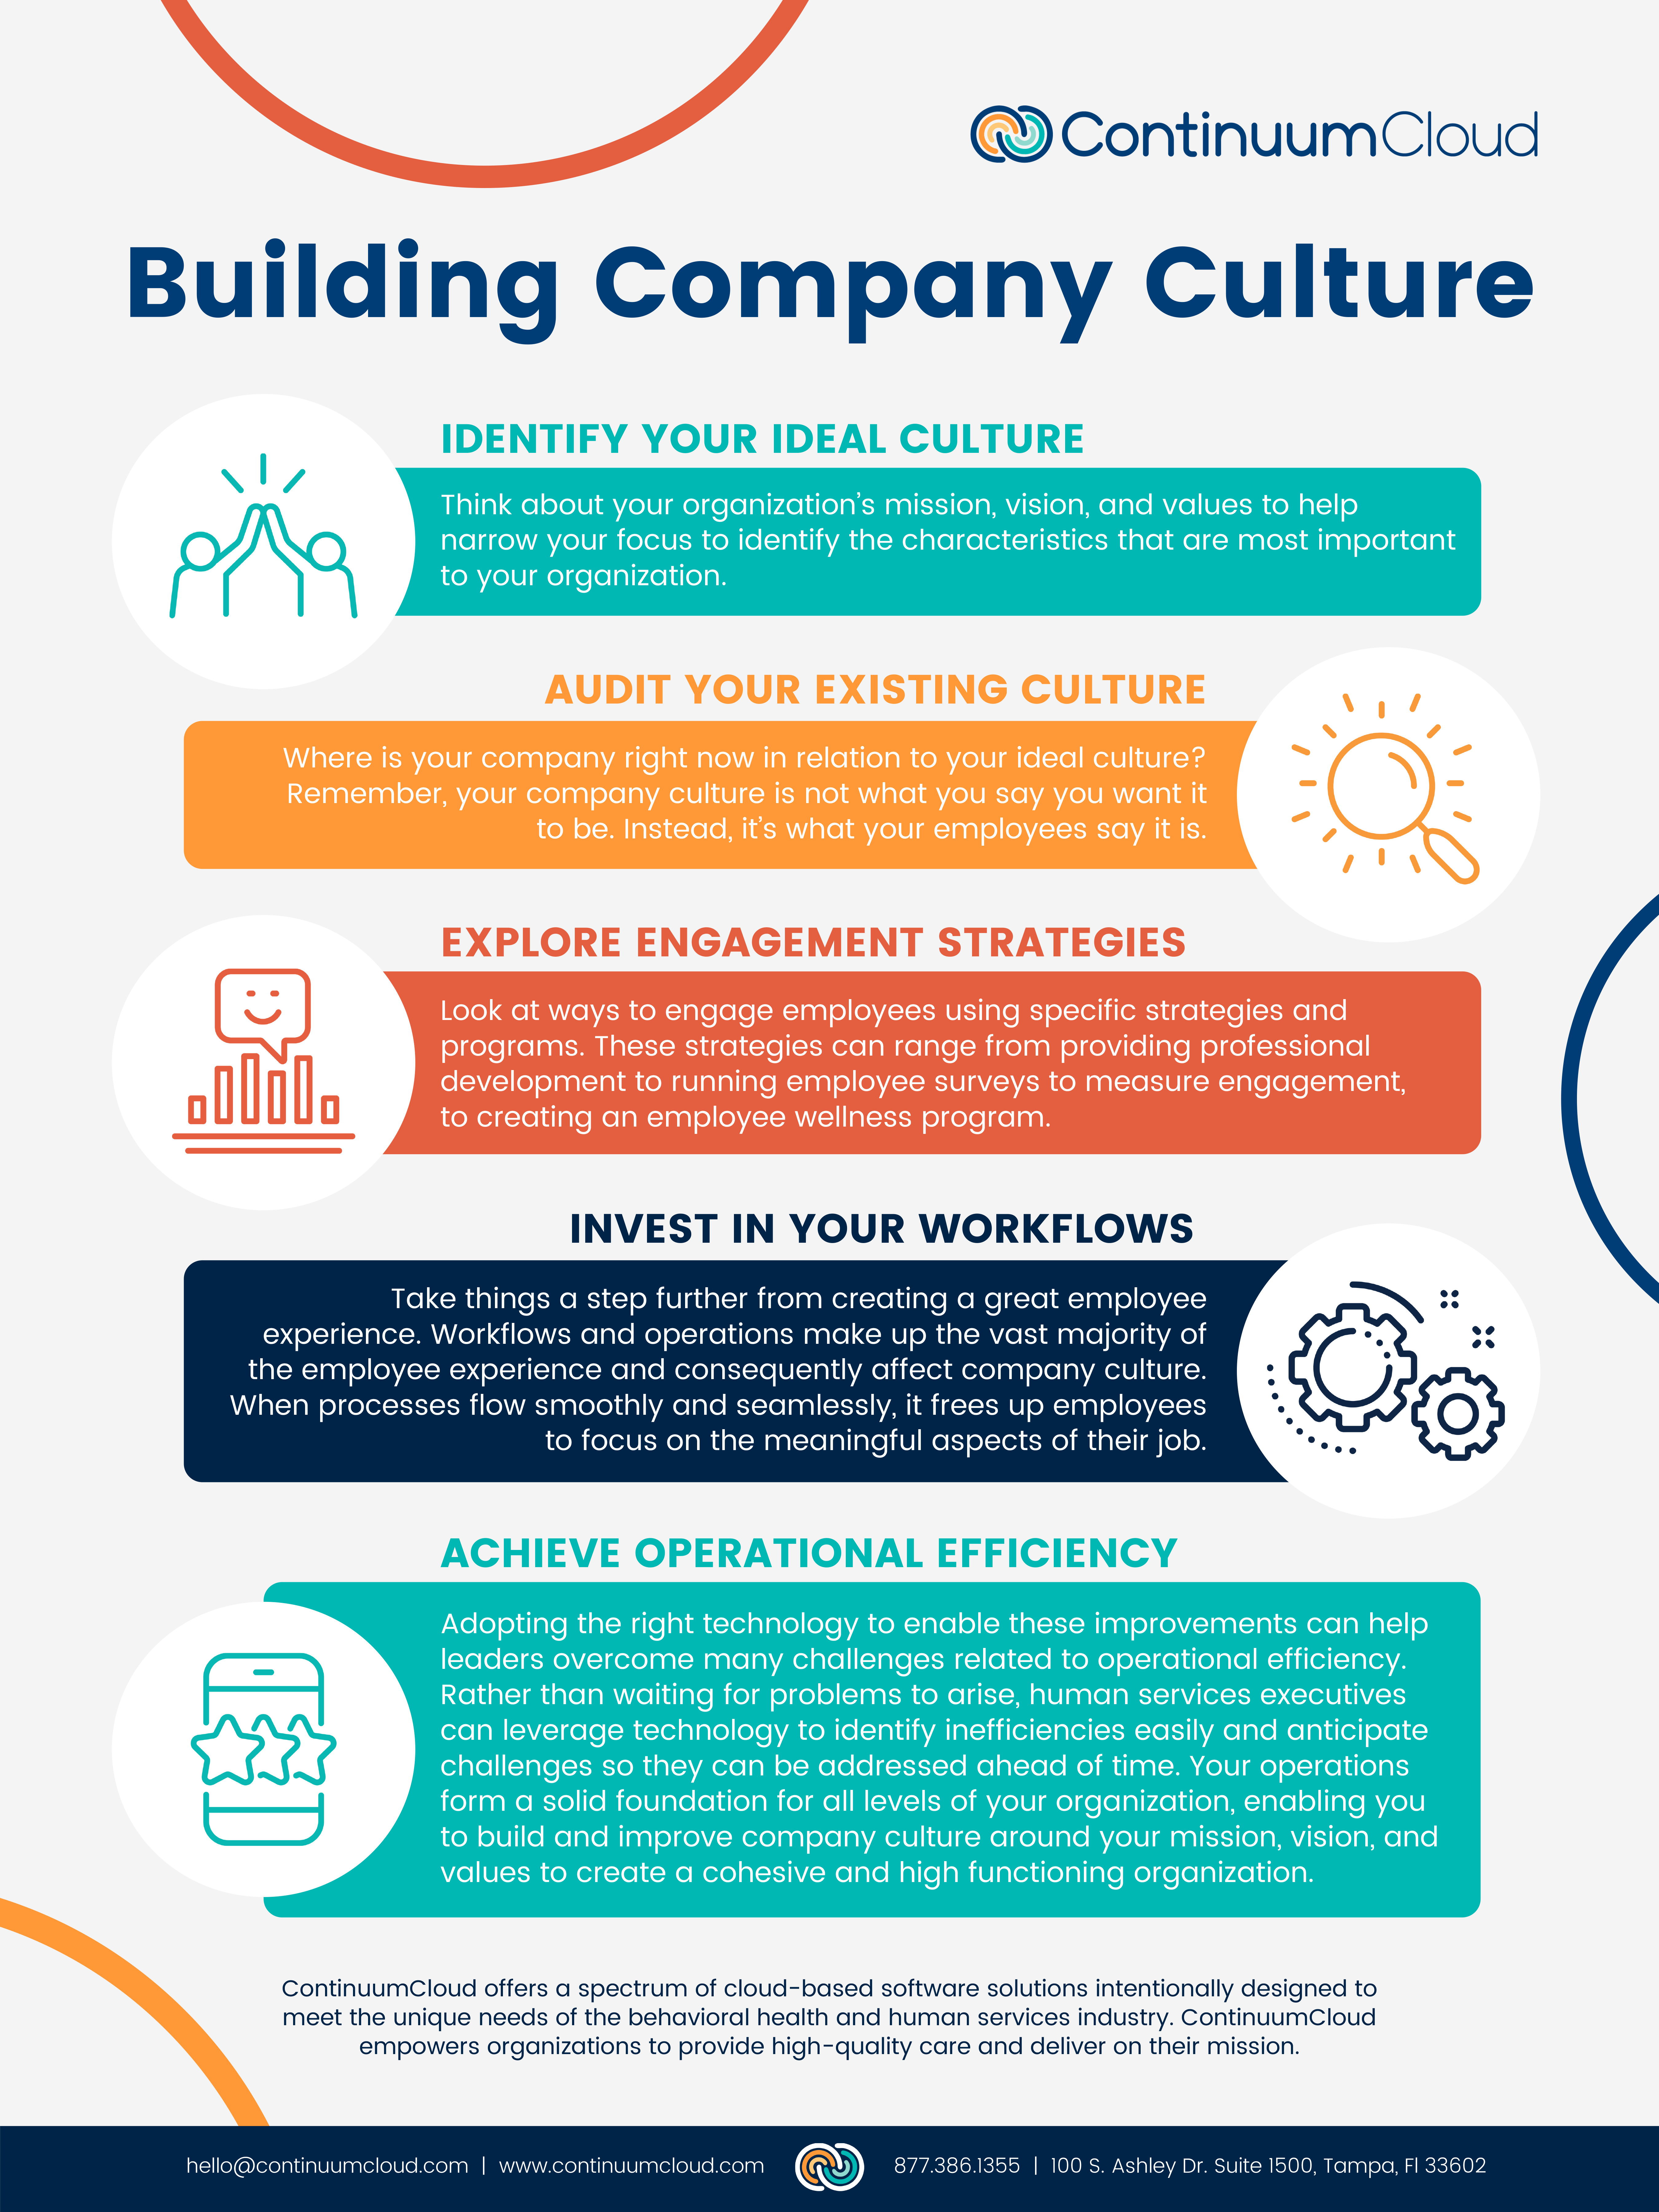 Building Company Culture | ContinuumCloud